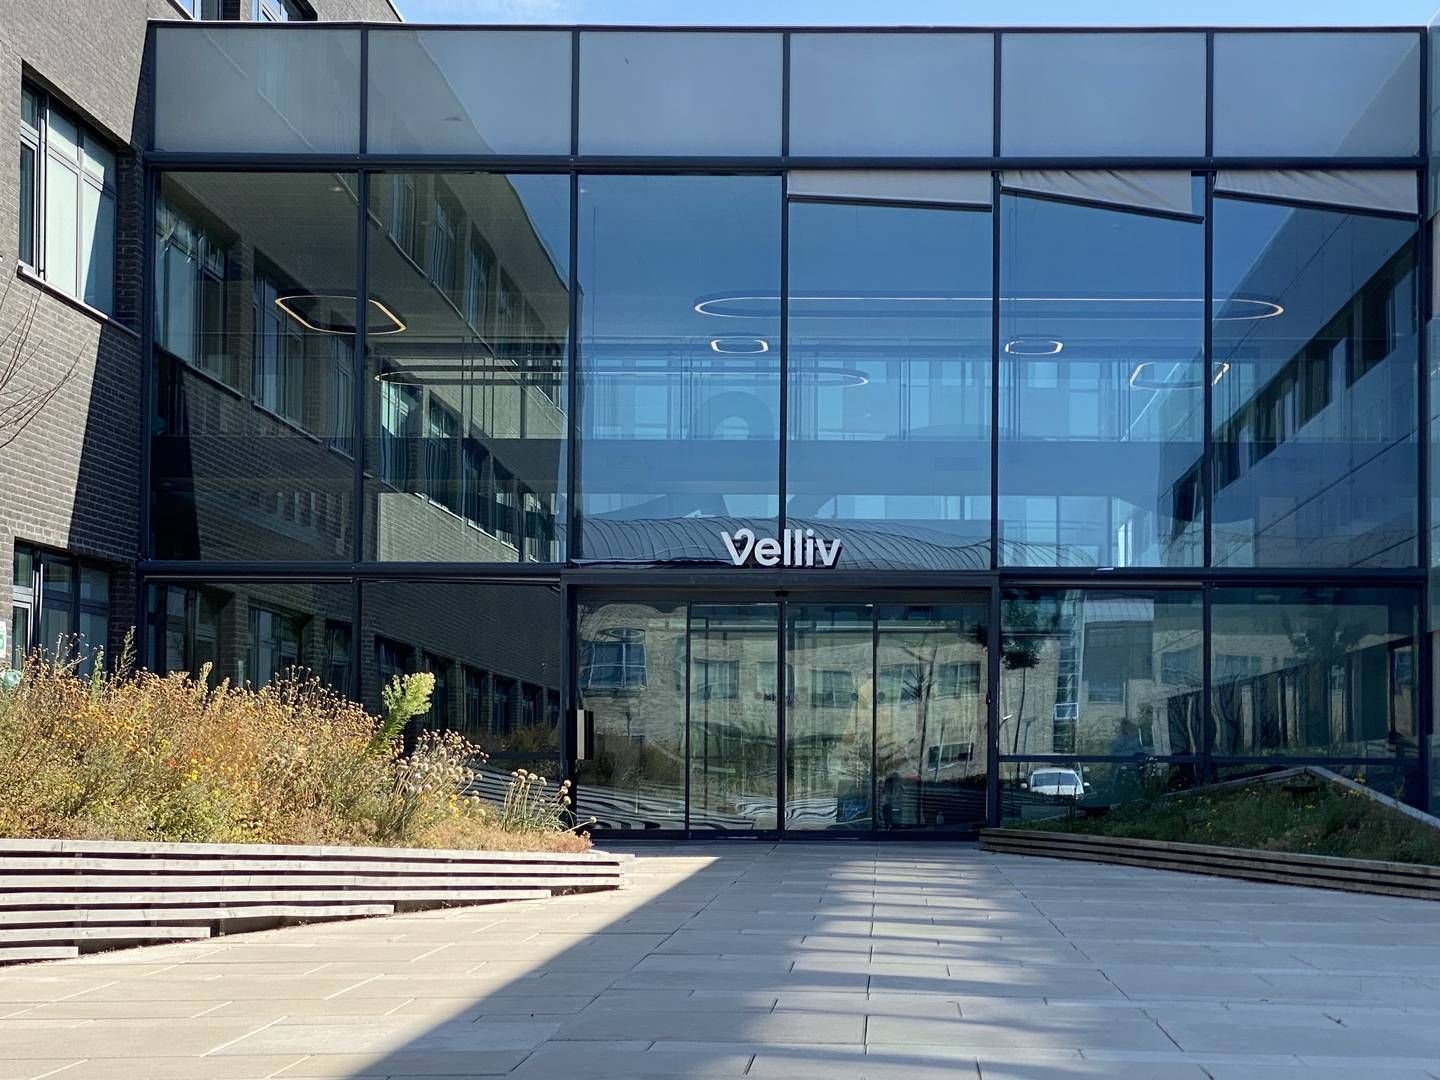 Velliv's headquarters in Ballerup, Copenhagen | Photo: PR/Velliv